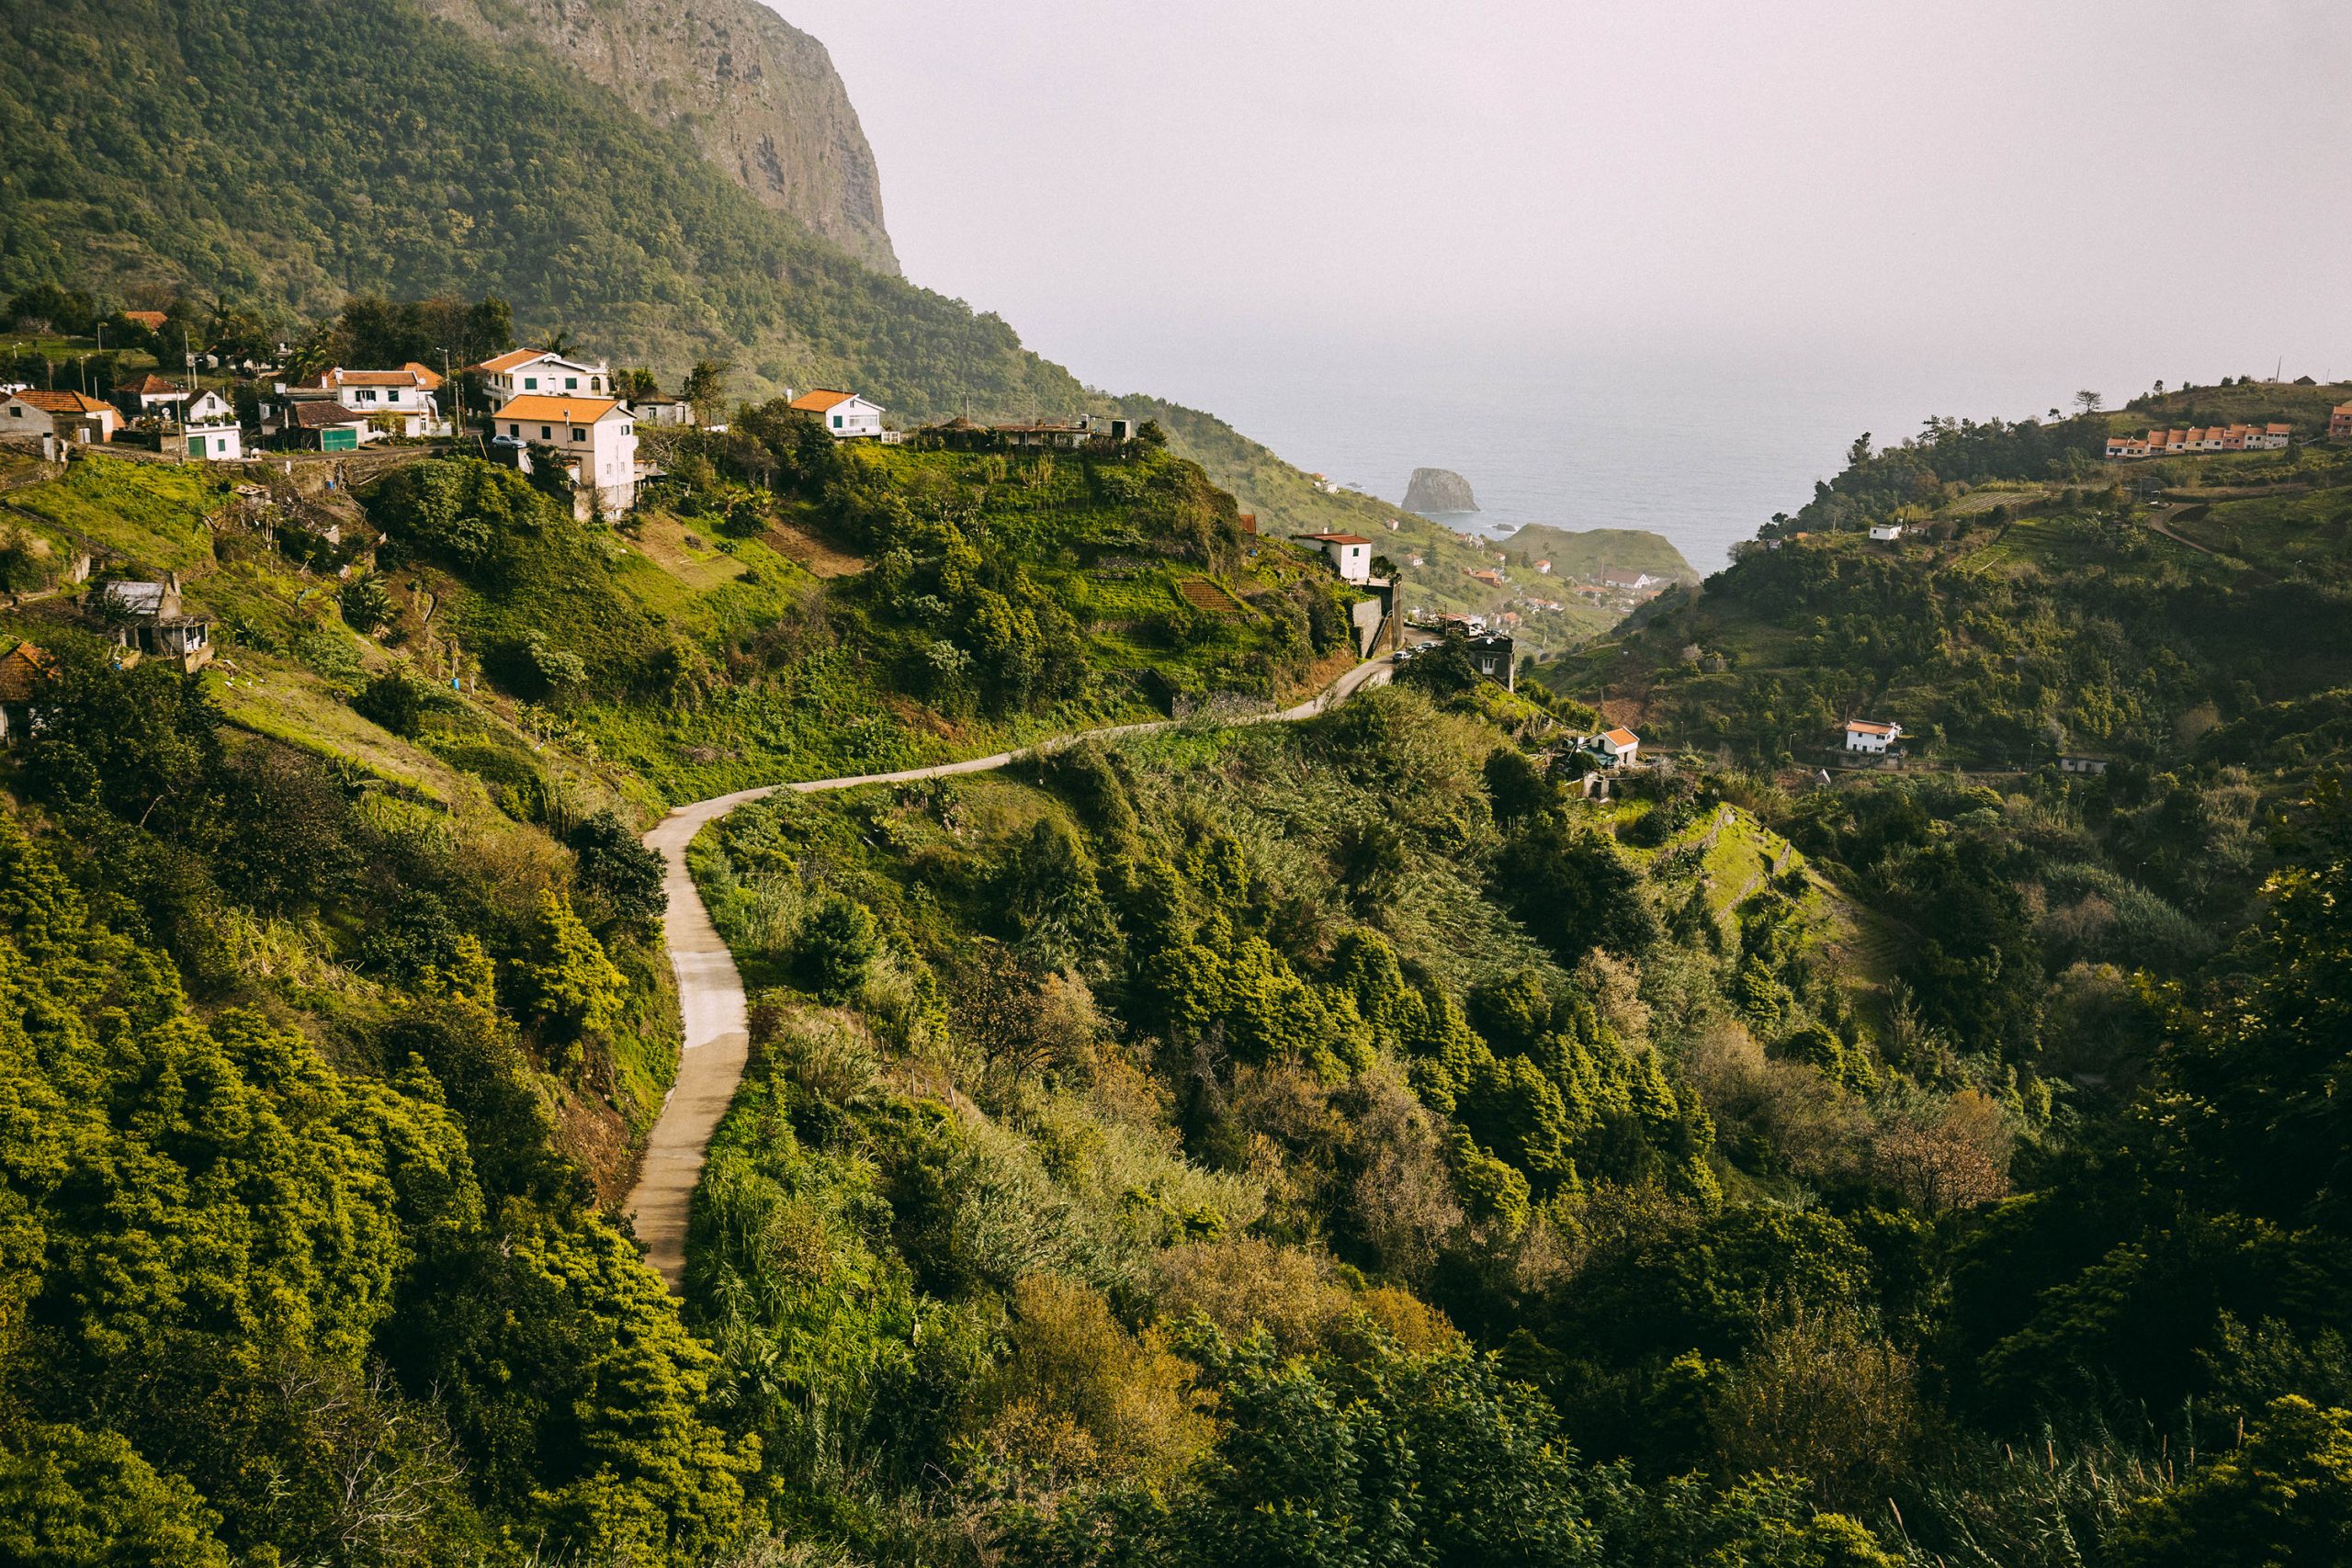 Auf Landgang: Bewölkter Himmel, weiches Licht und viel Grün: Dieses stimmungsvolle Landschaftsmotiv fotografierte Benjamin Wohlert während eines Landgangs auf der Insel Madeira. Bild: Benjamin Wohlert